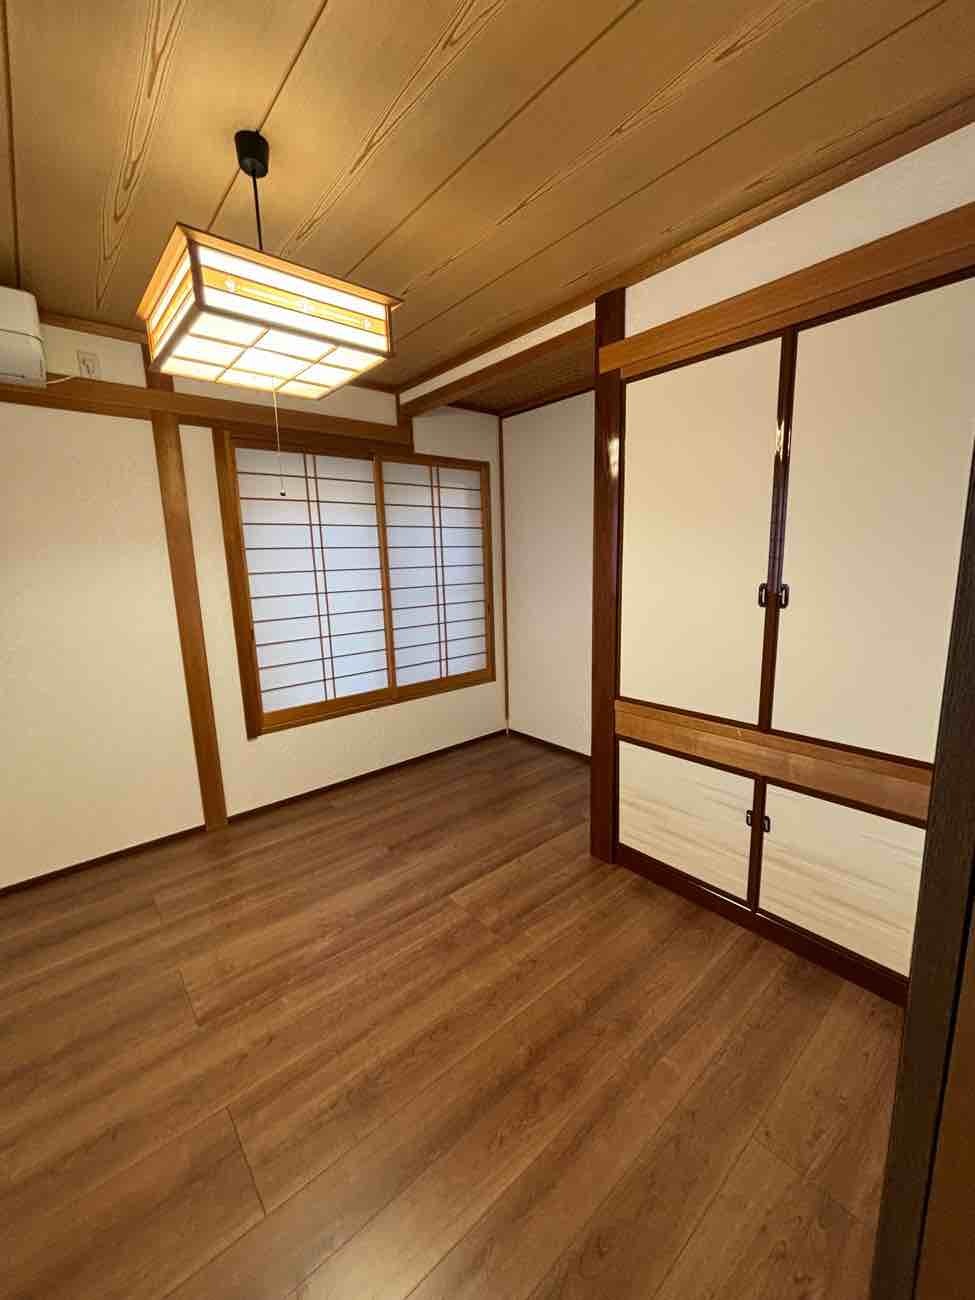 【埼玉県草加市】K様邸和室改修洋室改装工事が完了しました。 画像